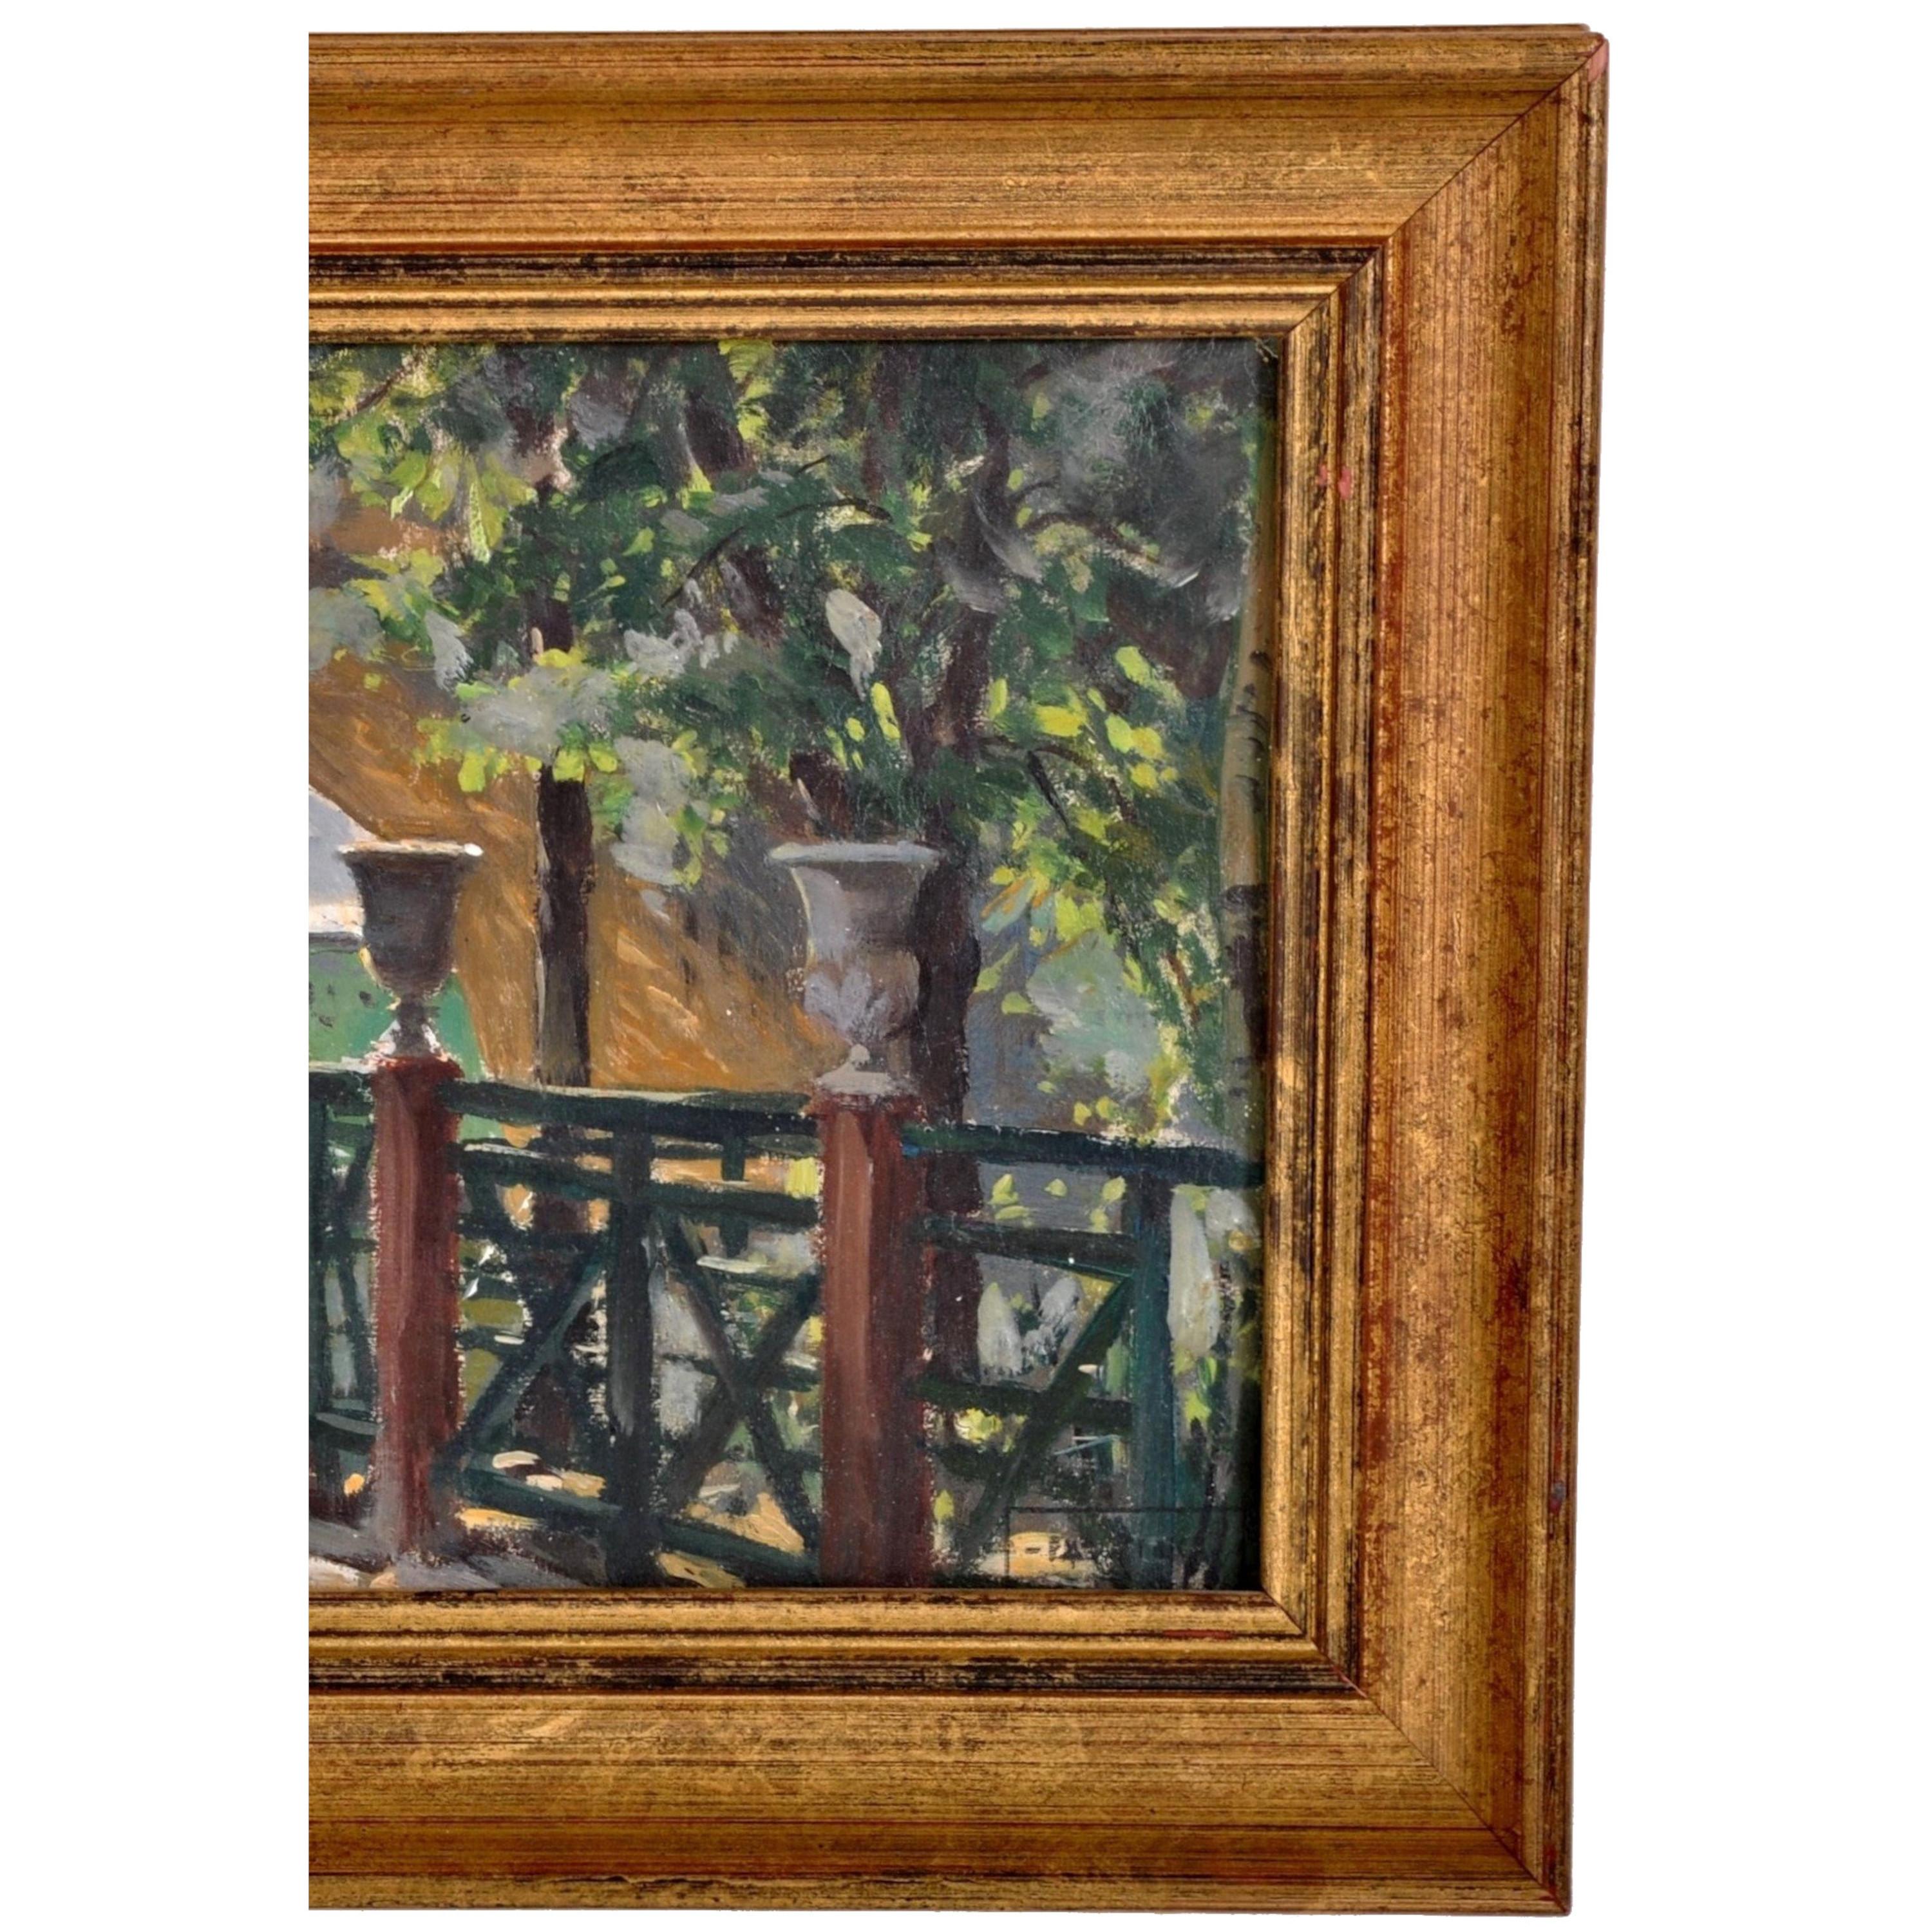 Antique French Impressionist Oil Painting Paris River Scene Paul de Frick 1900 - Brown Landscape Painting by PAUL DE FRICK